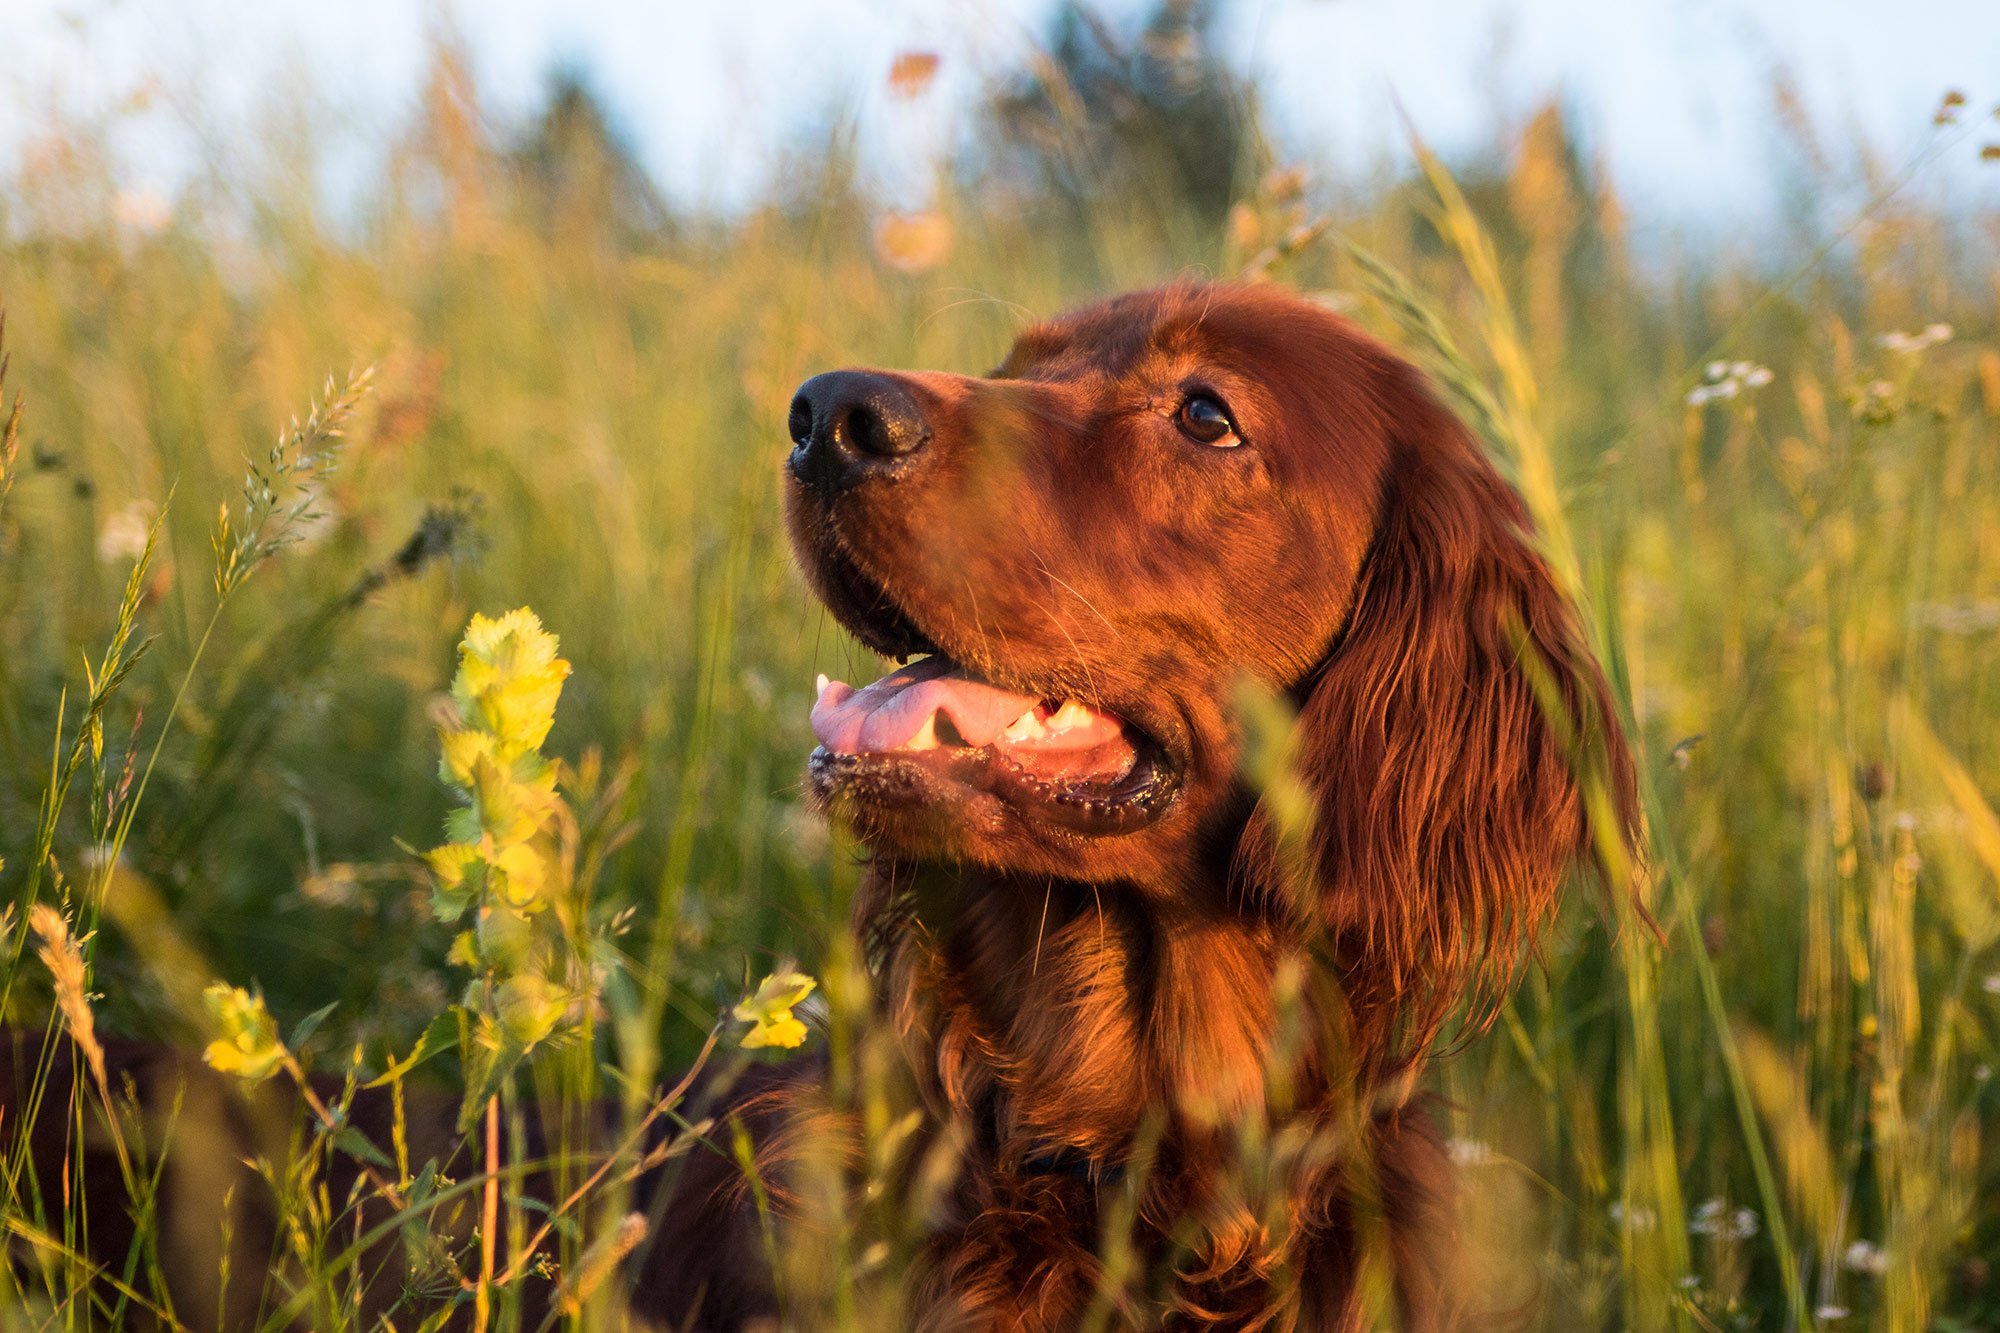 Dog in grass field